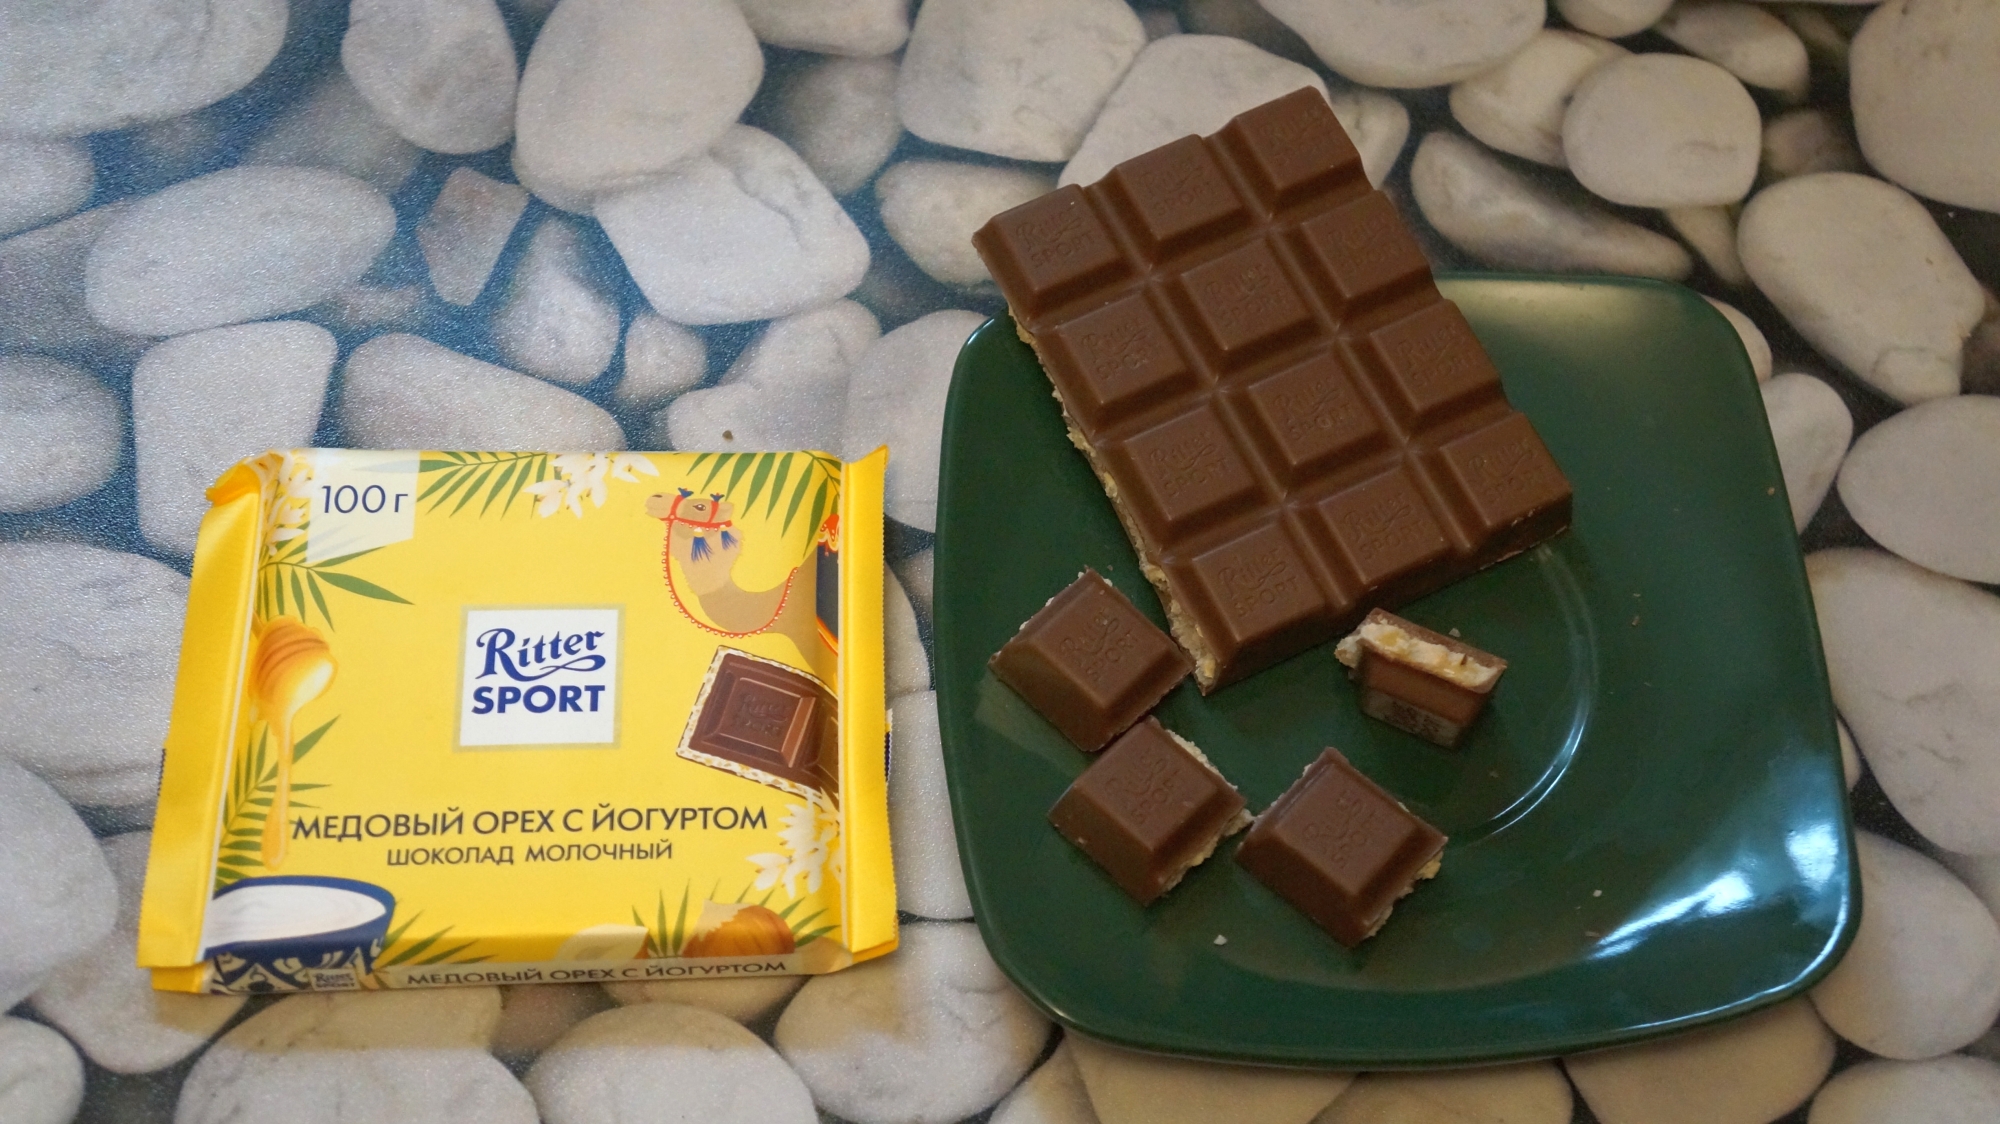 Шоколад Ritter Sport Медовый орех с йогуртом